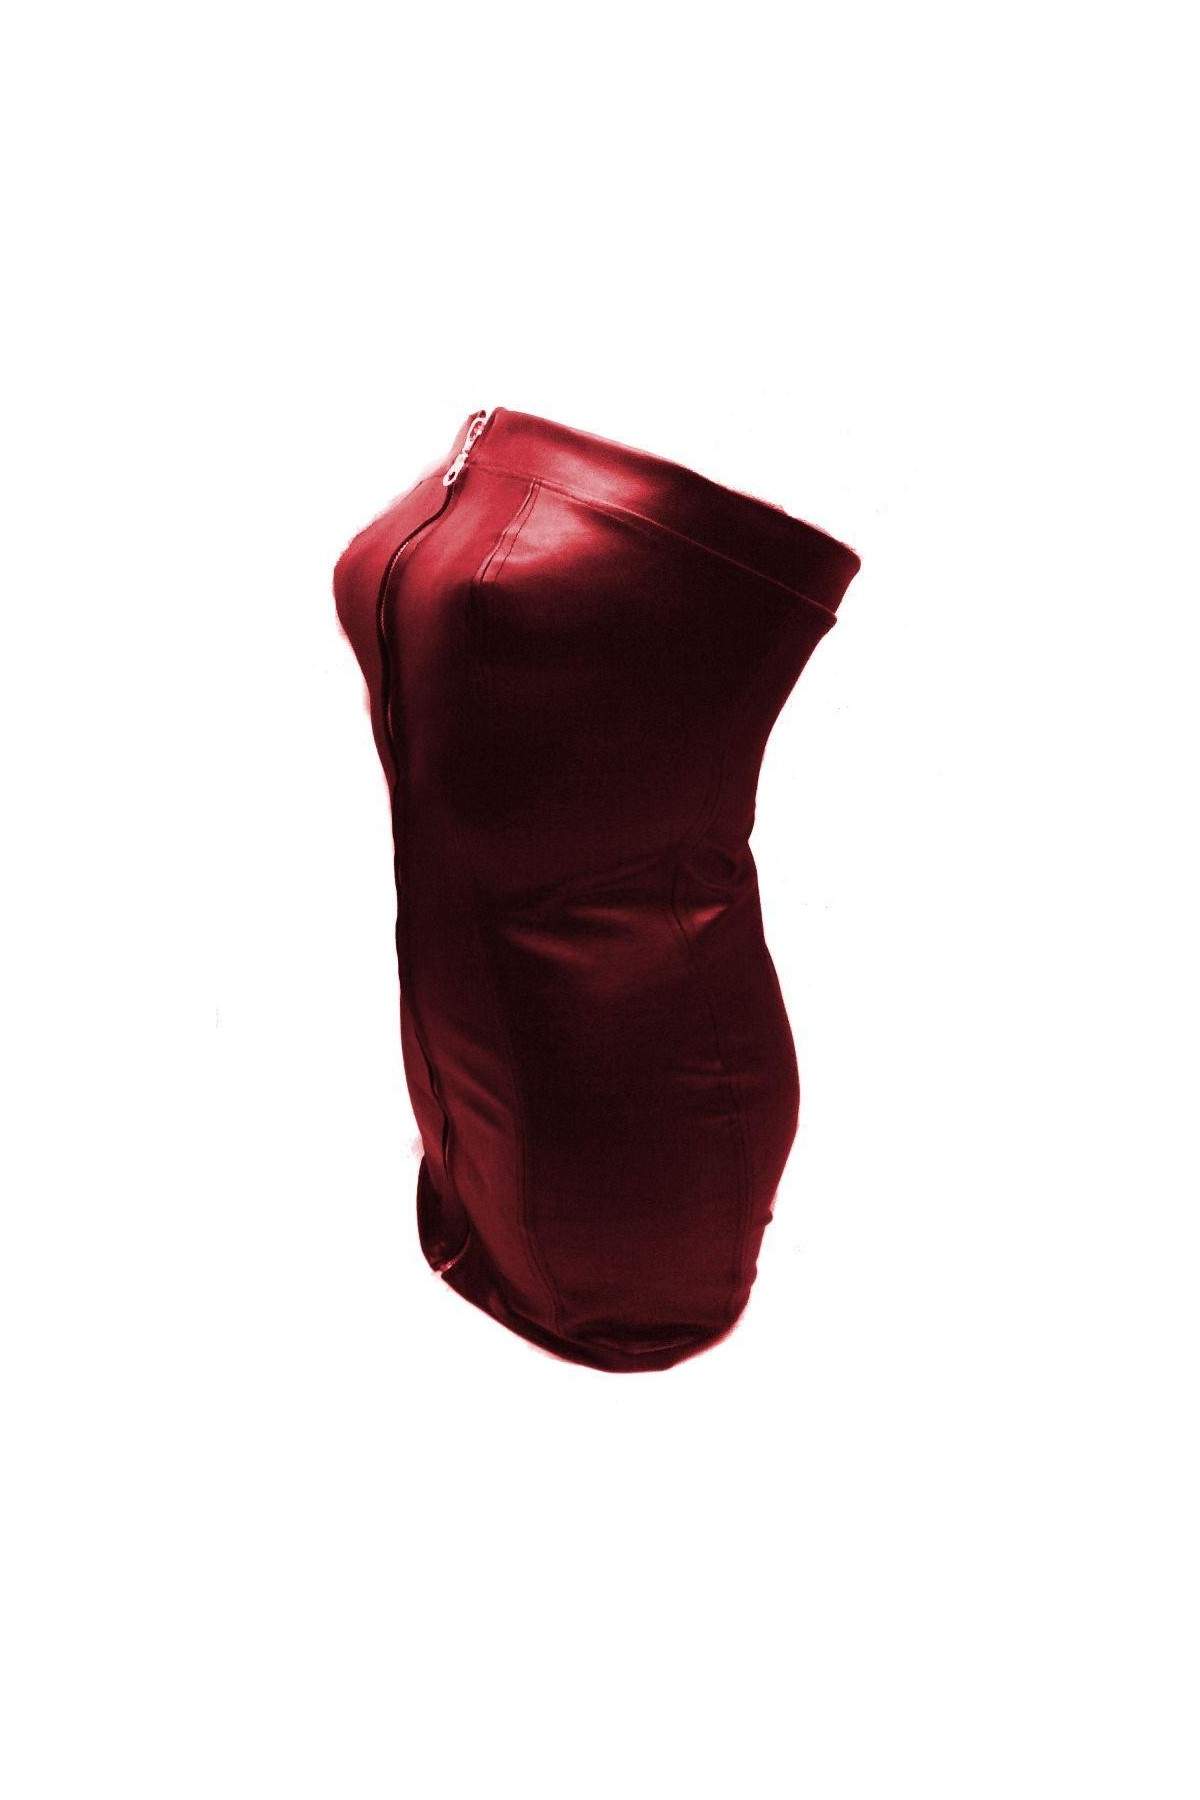 Soft designer leather dress red size L - XXL (44 - 52) - Deutsche Produktion